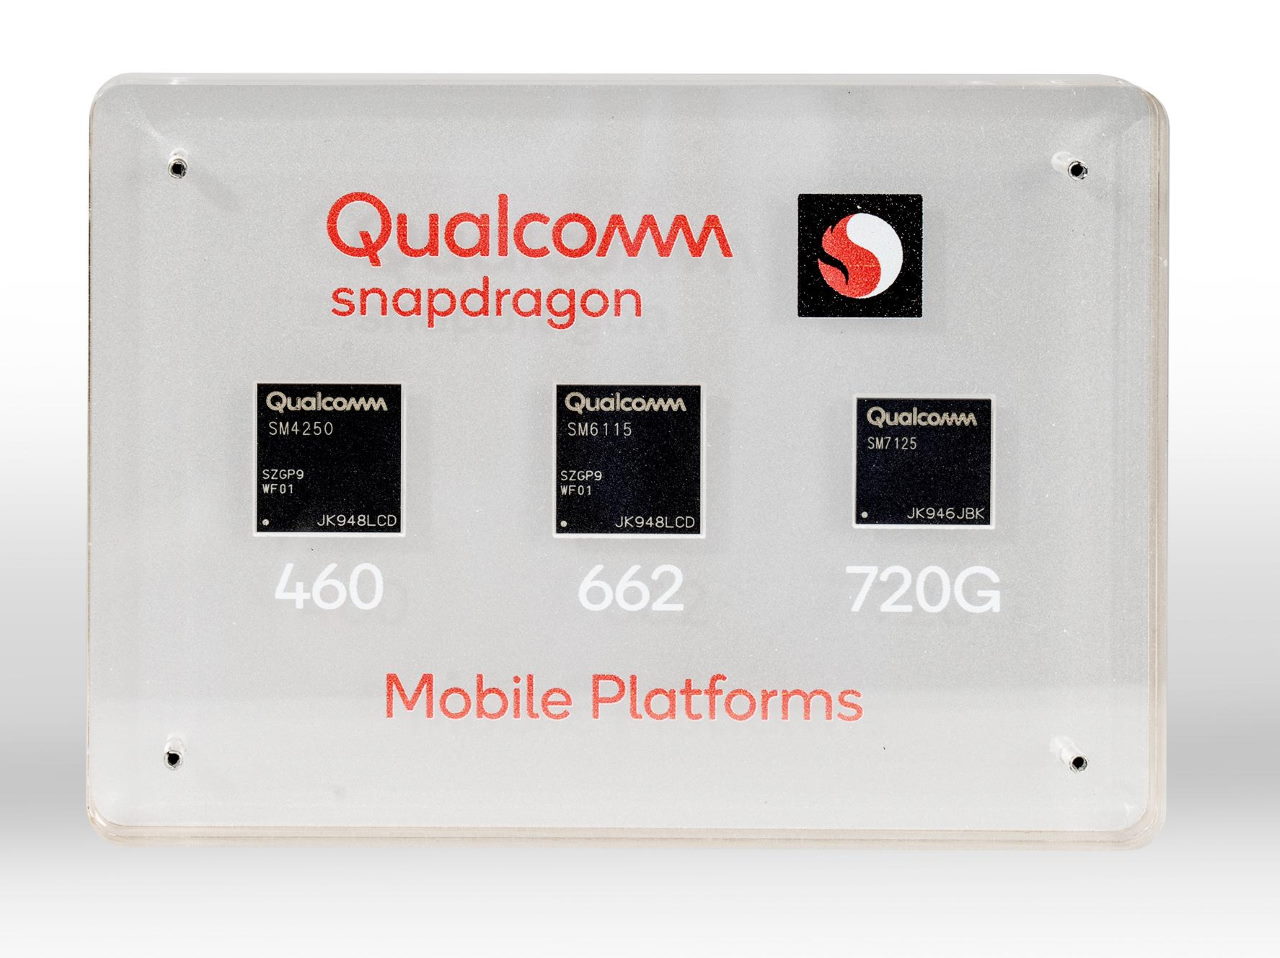 Qualcomm memperkenalkan Snapdragon 720G terbaru, 662 y 460 nuevos